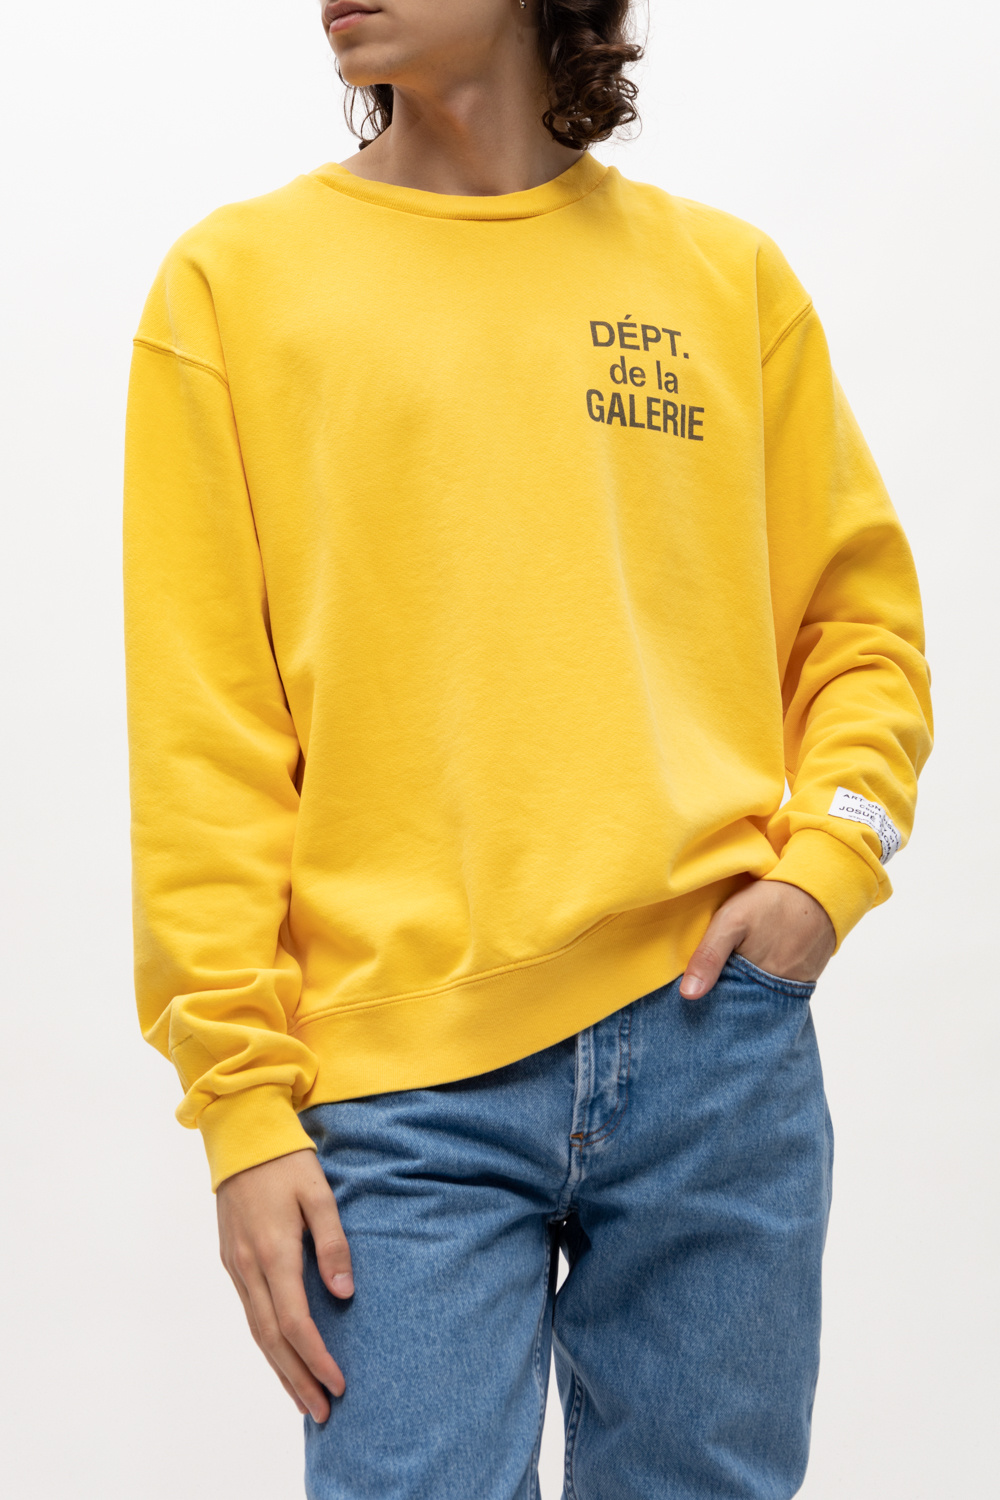 GALLERY DEPT. Sweatshirt with logo